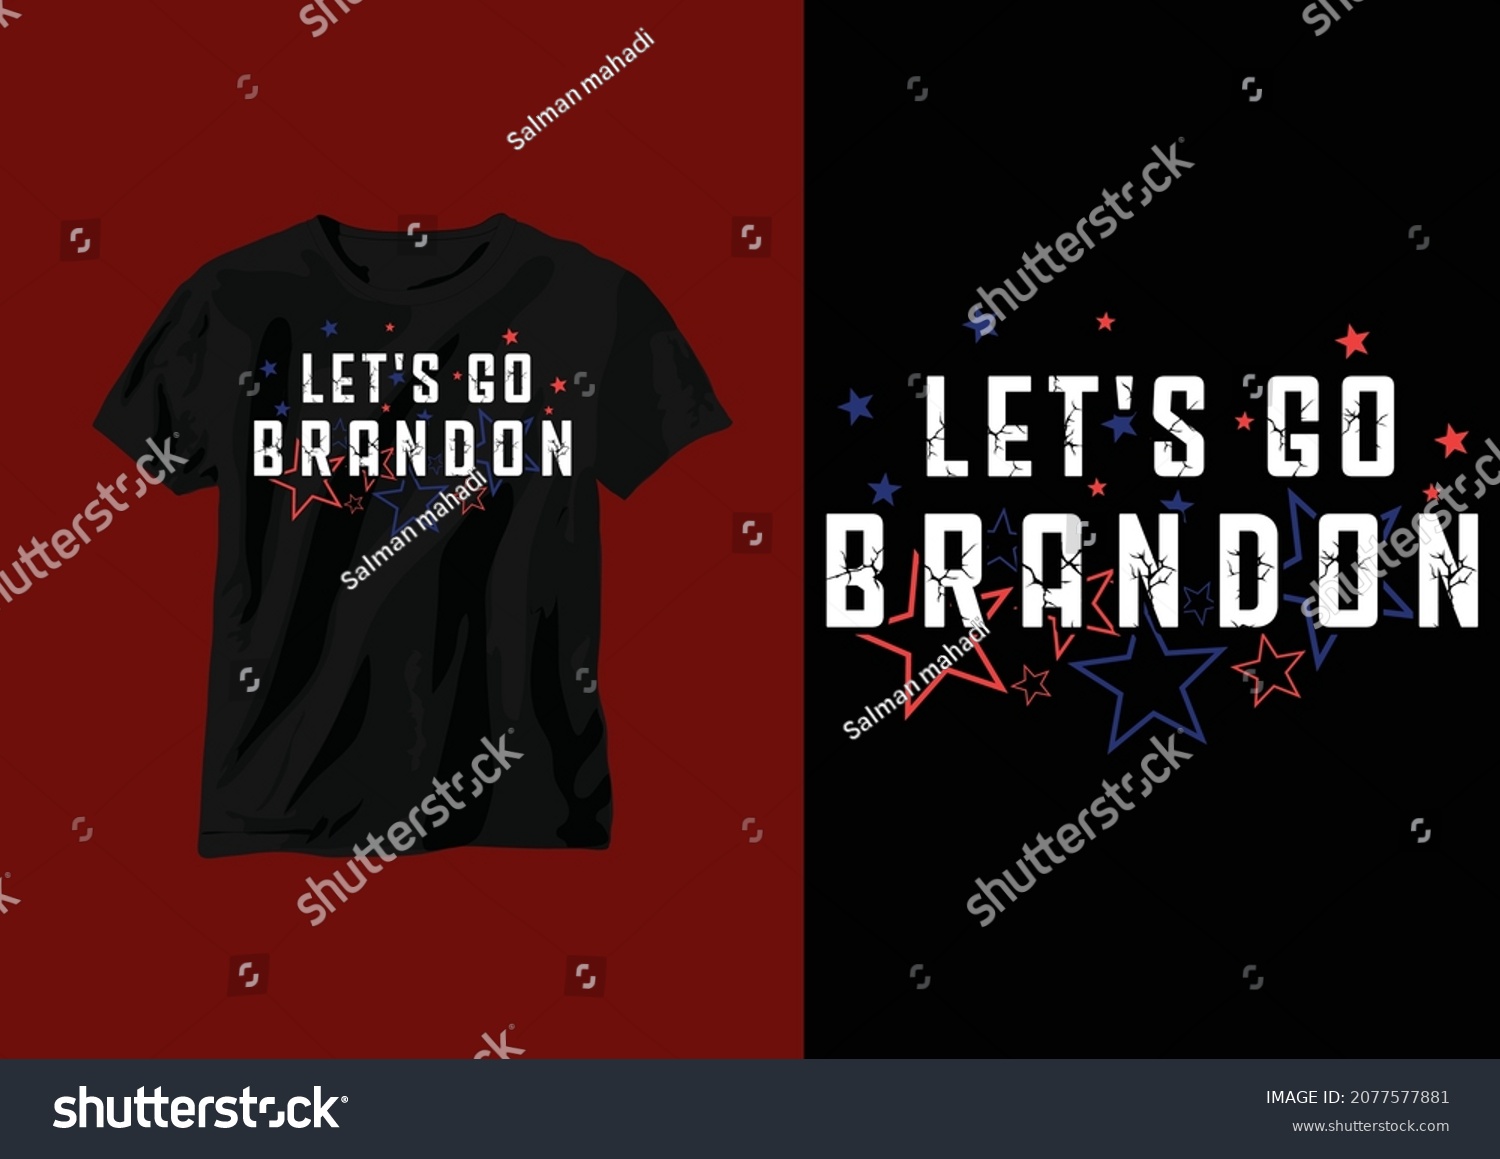 SVG of Let's go Brandon T-shirt design. USA grunge flag t shirt design. Vector svg